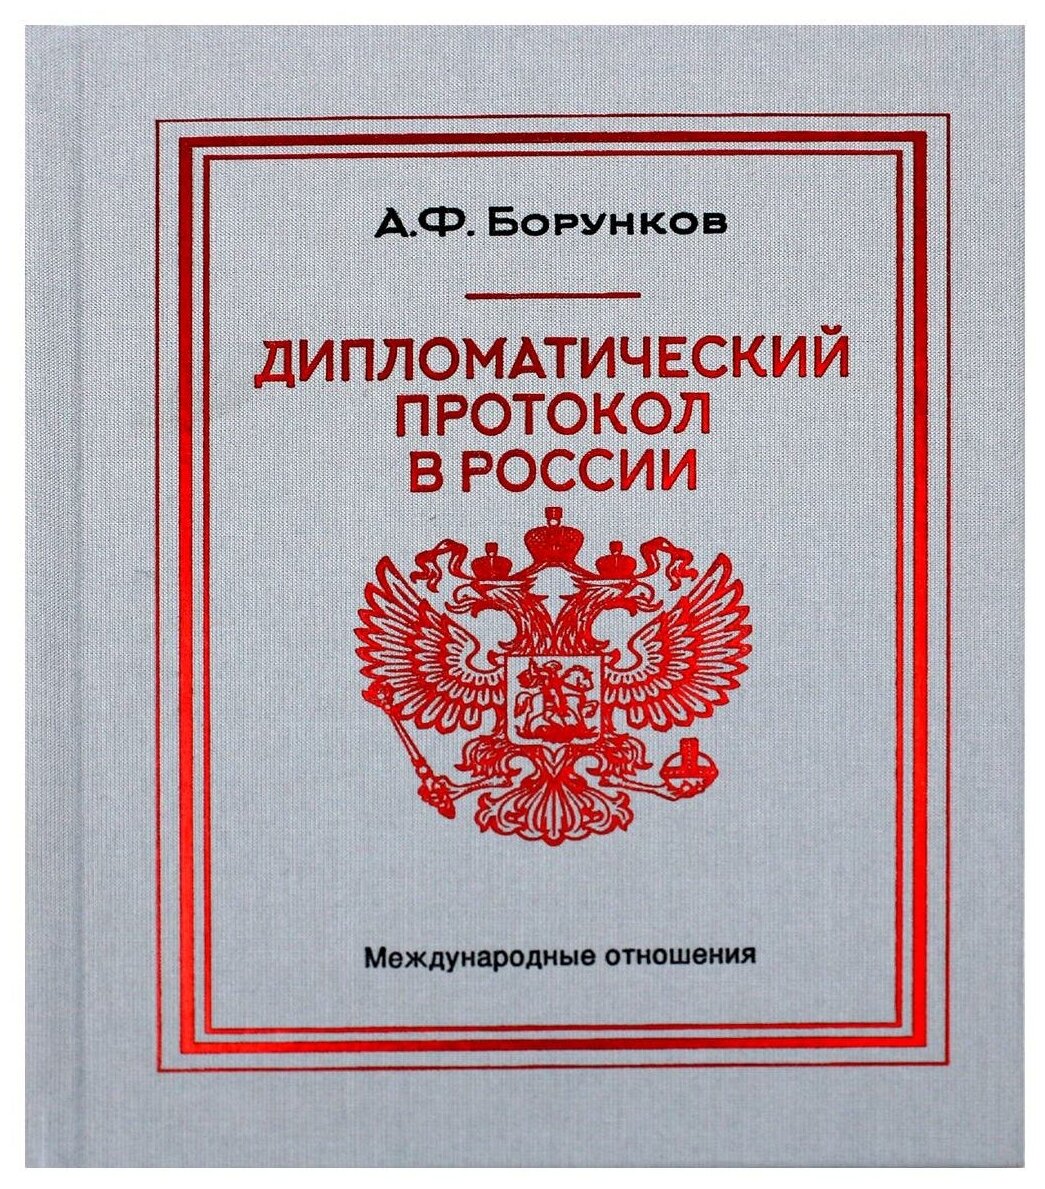 Дипломатический протокол в России - фото №1